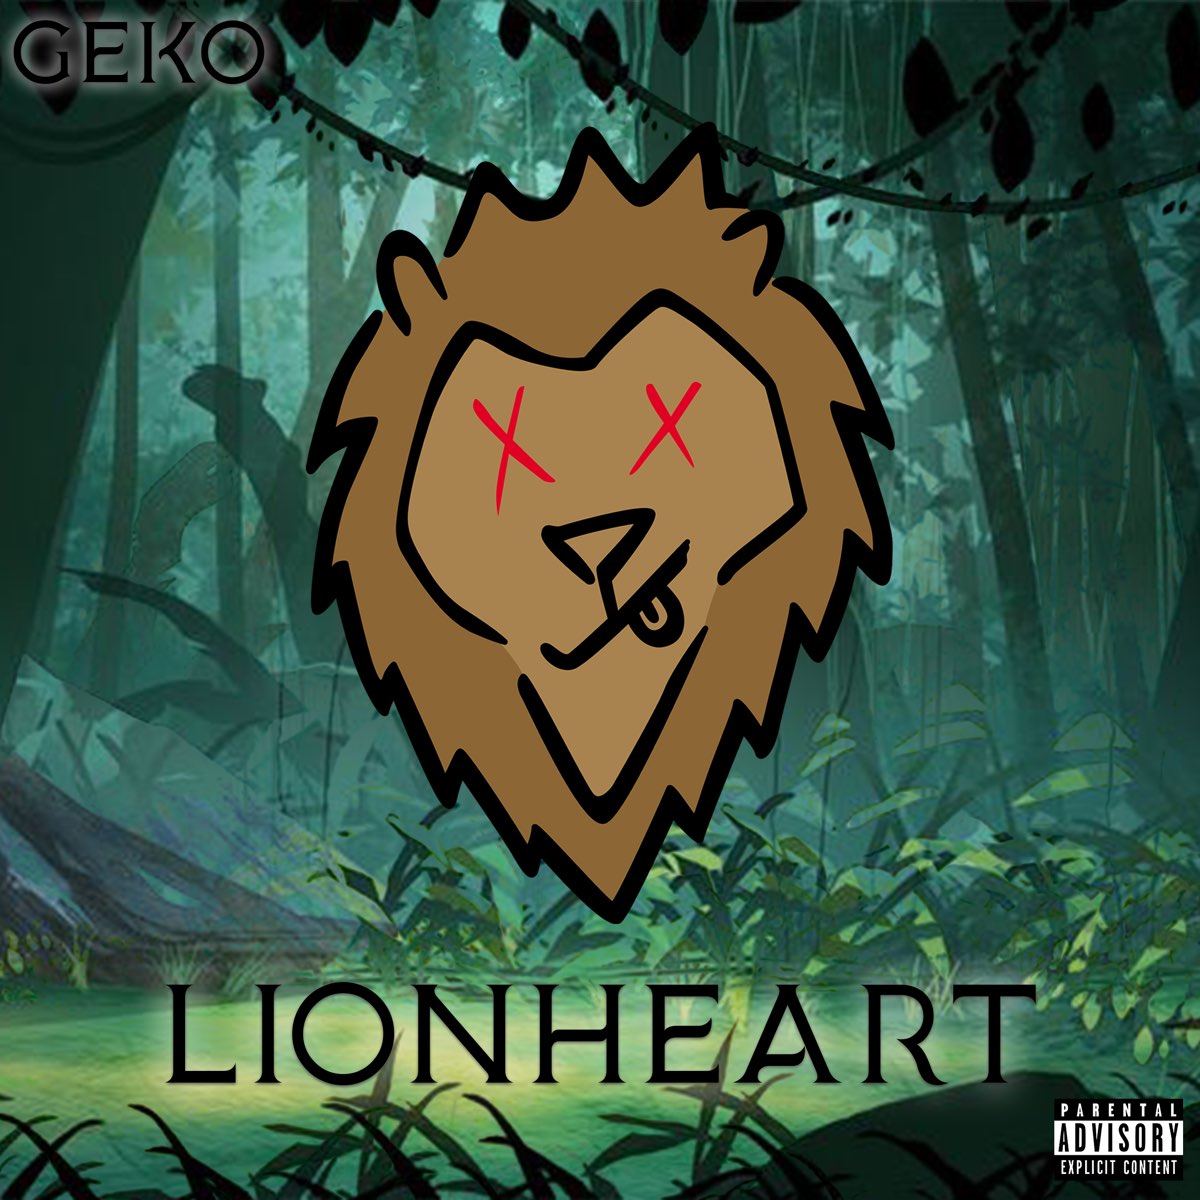 LionHeart - Album by Geko - Apple Music